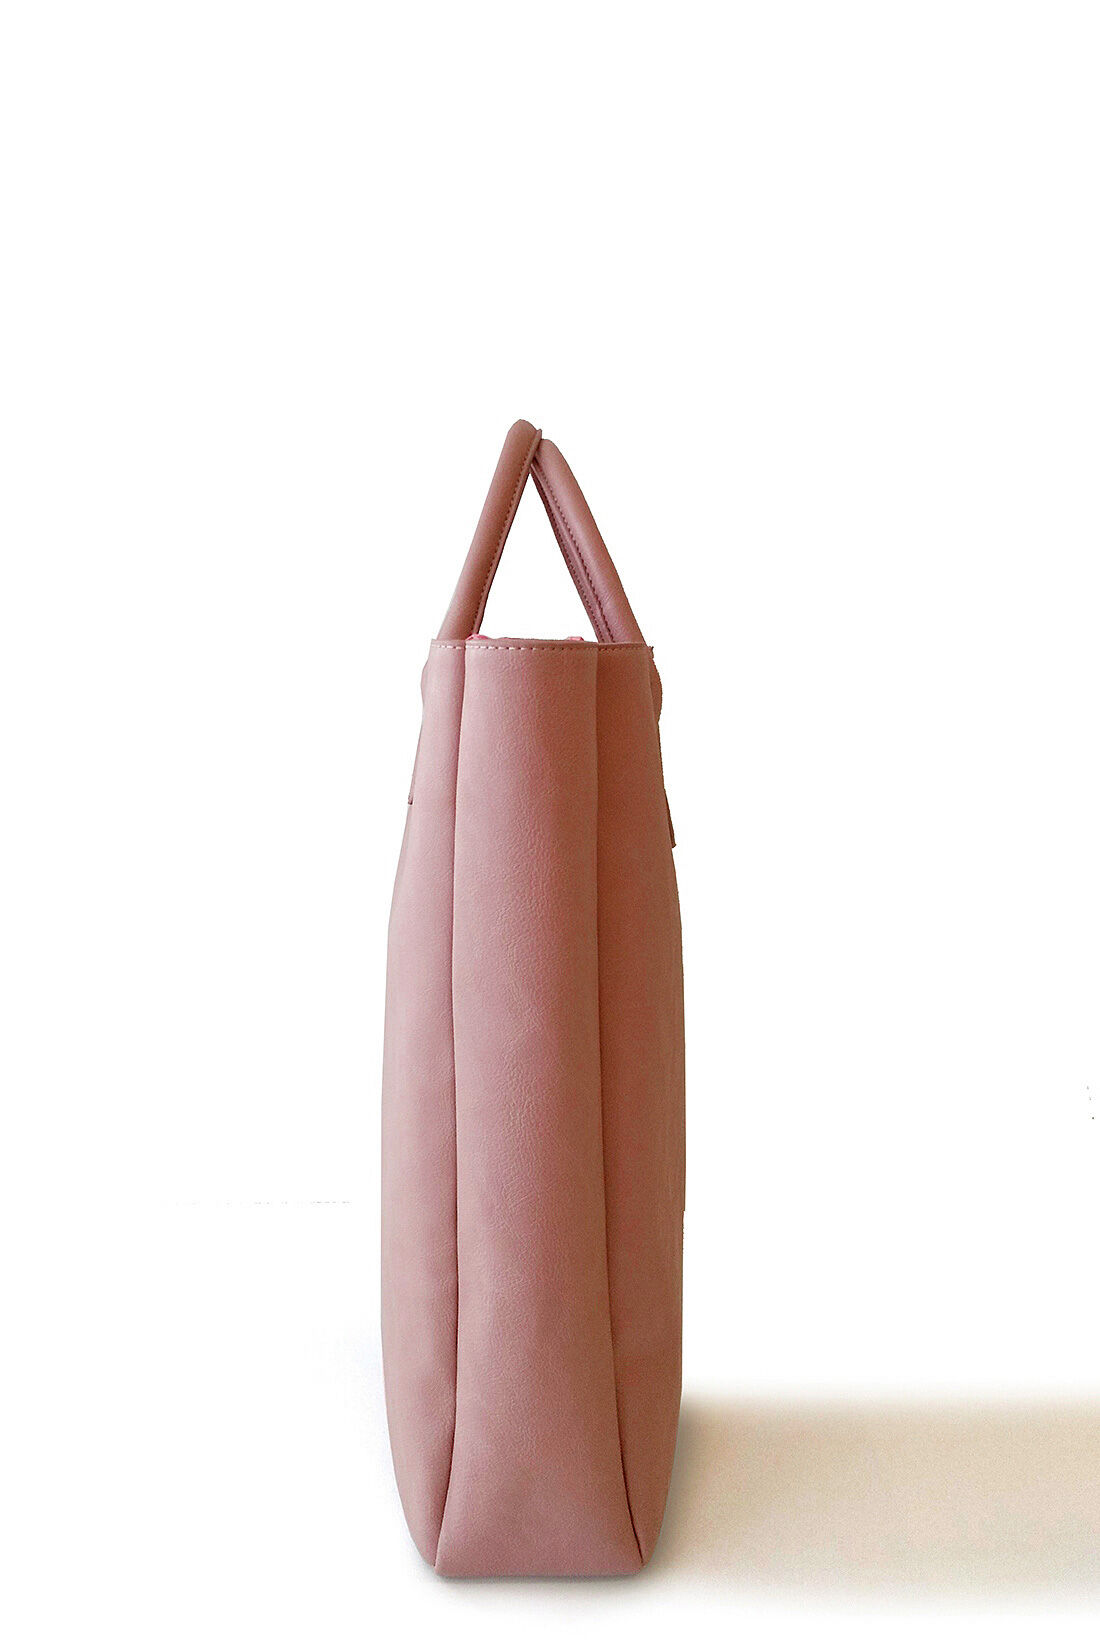 Real Stock|【3～10日でお届け】OSYAIRO カラーを楽しむ　大きな内ポケット付きビッグトートバッグ〈ピンク〉|しっかりまちをつけ、へたらないのもうれしい。